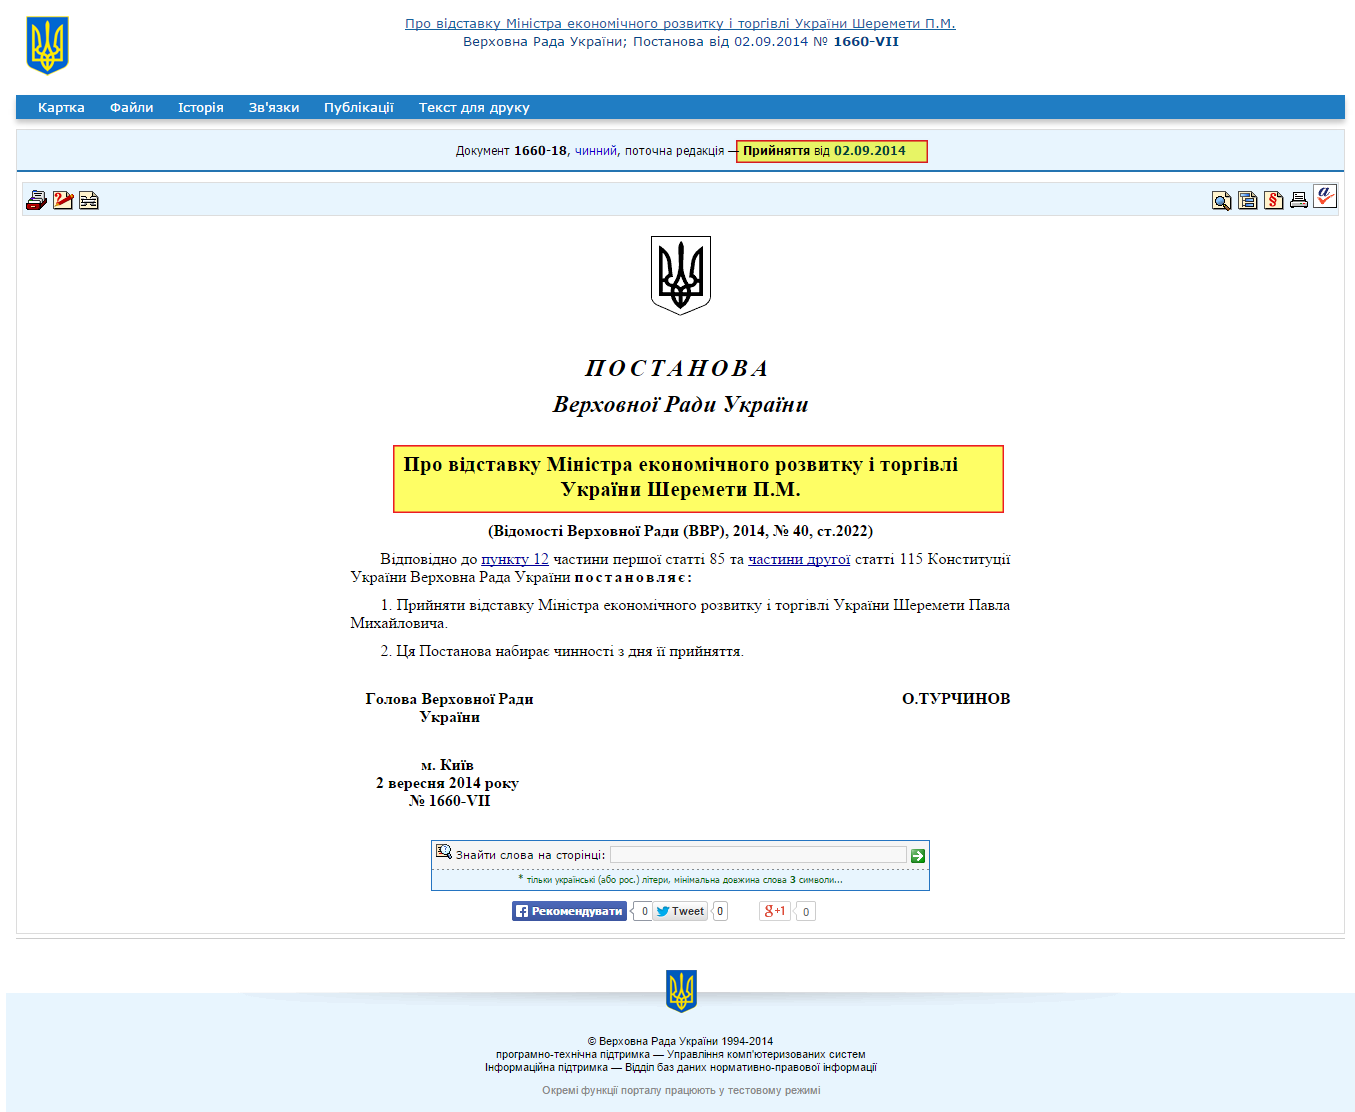 http://zakon4.rada.gov.ua/laws/show/1660-vii